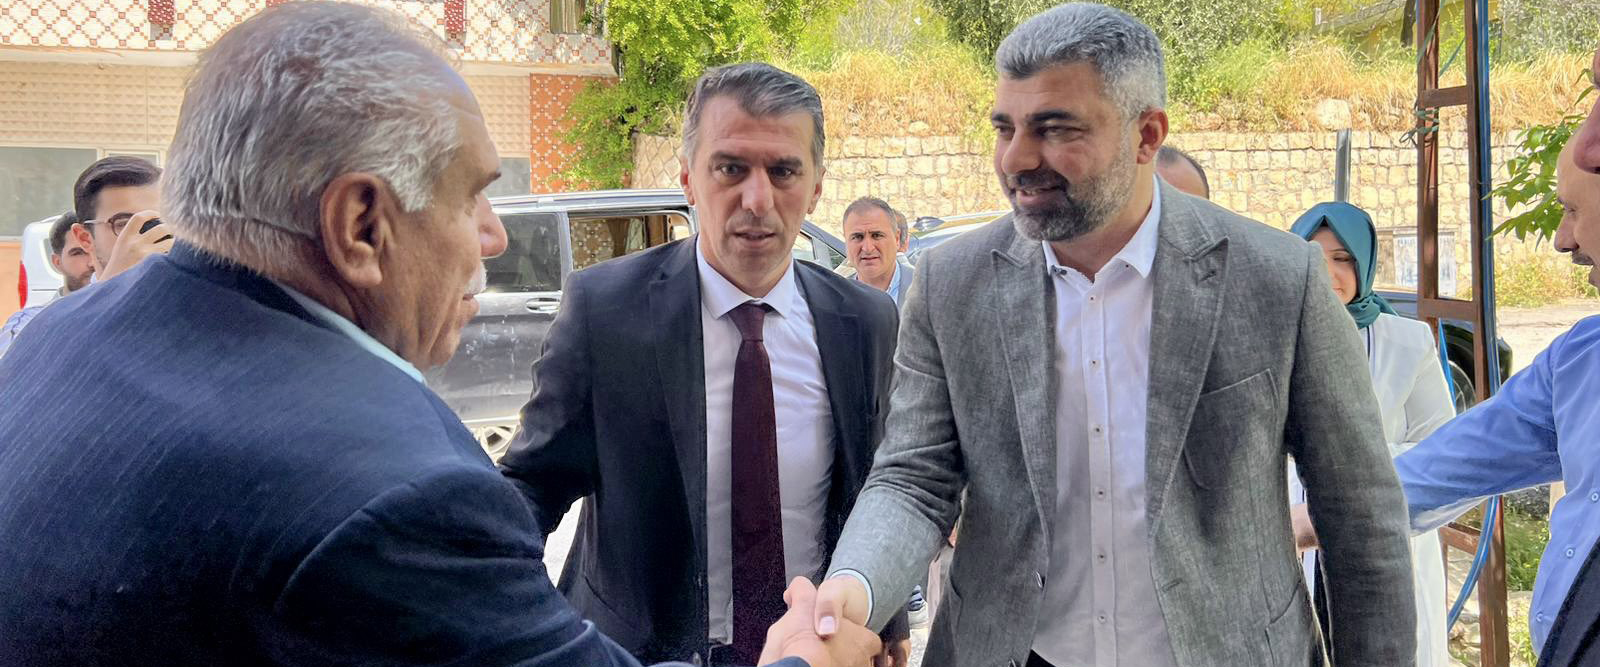 AK Parti Mardin Milletvekili Adayı Faruk Kılıç, Yeşilli’de seçim çalışması yürüttü